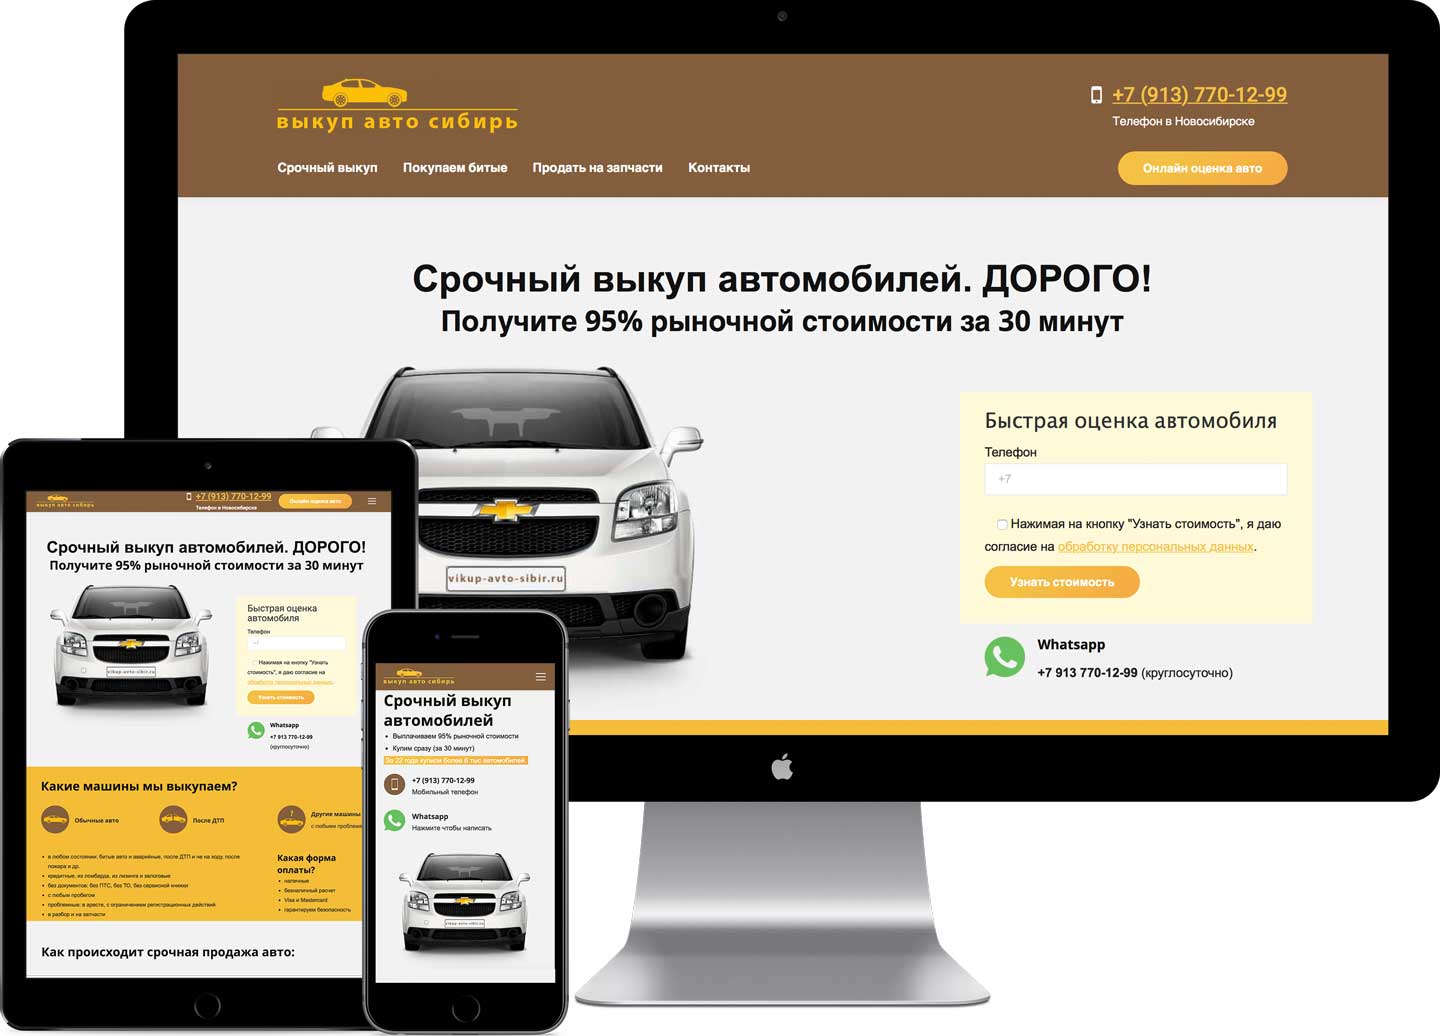 Продам авто в новосибирске. Выкуп автомобилей. Выкуп автомобилей в Новосибирск. Срочный выкуп автомобилей. Скупка авто.